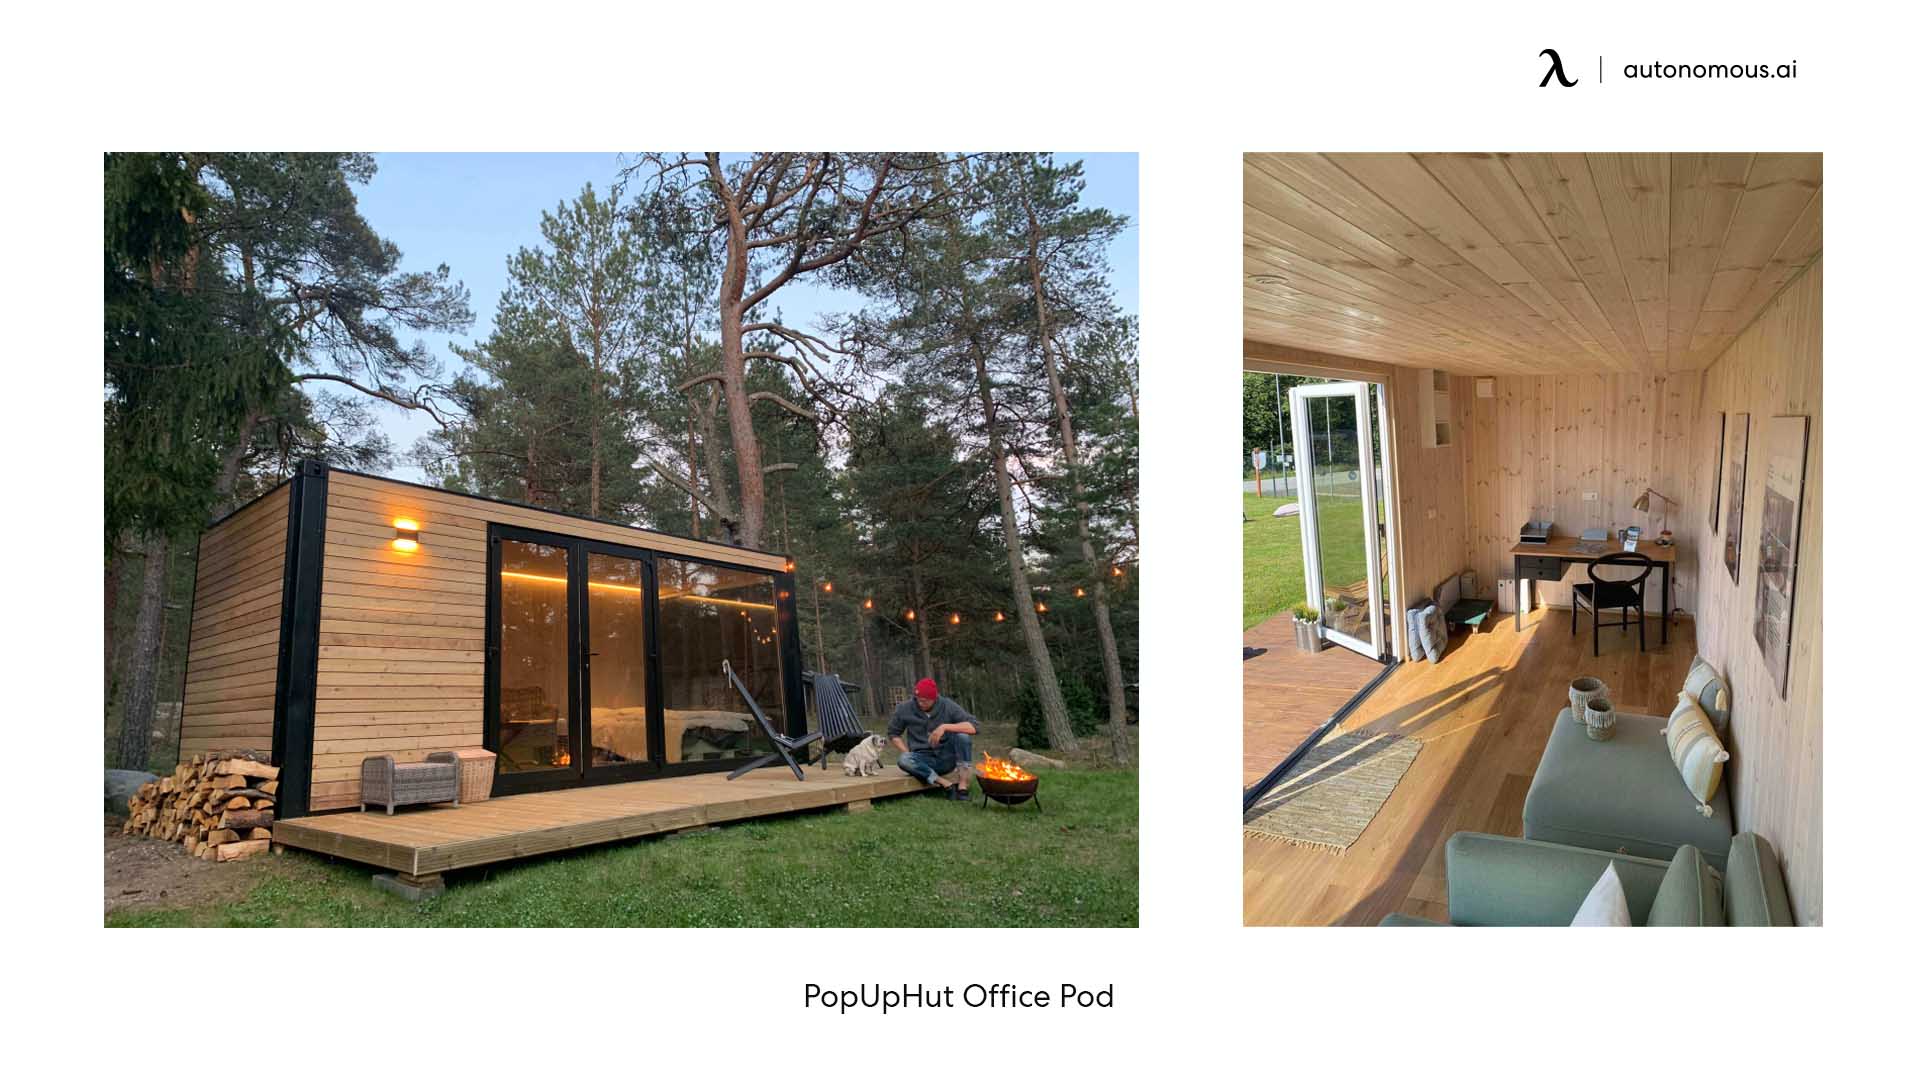 PopUpHut Office Pod modern backyard office